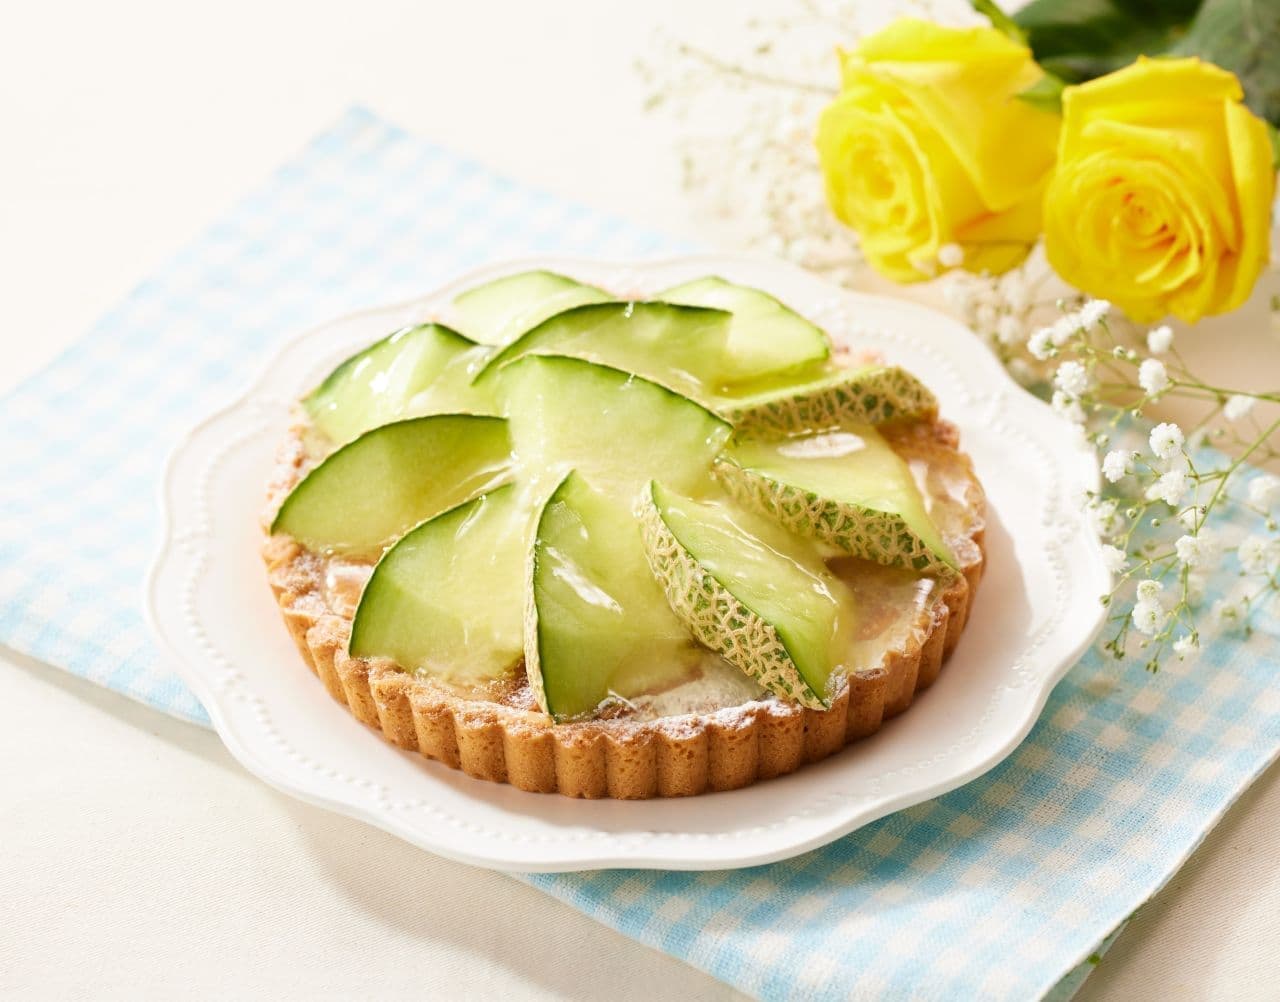 Aeon "Luxury Japanese melon tart